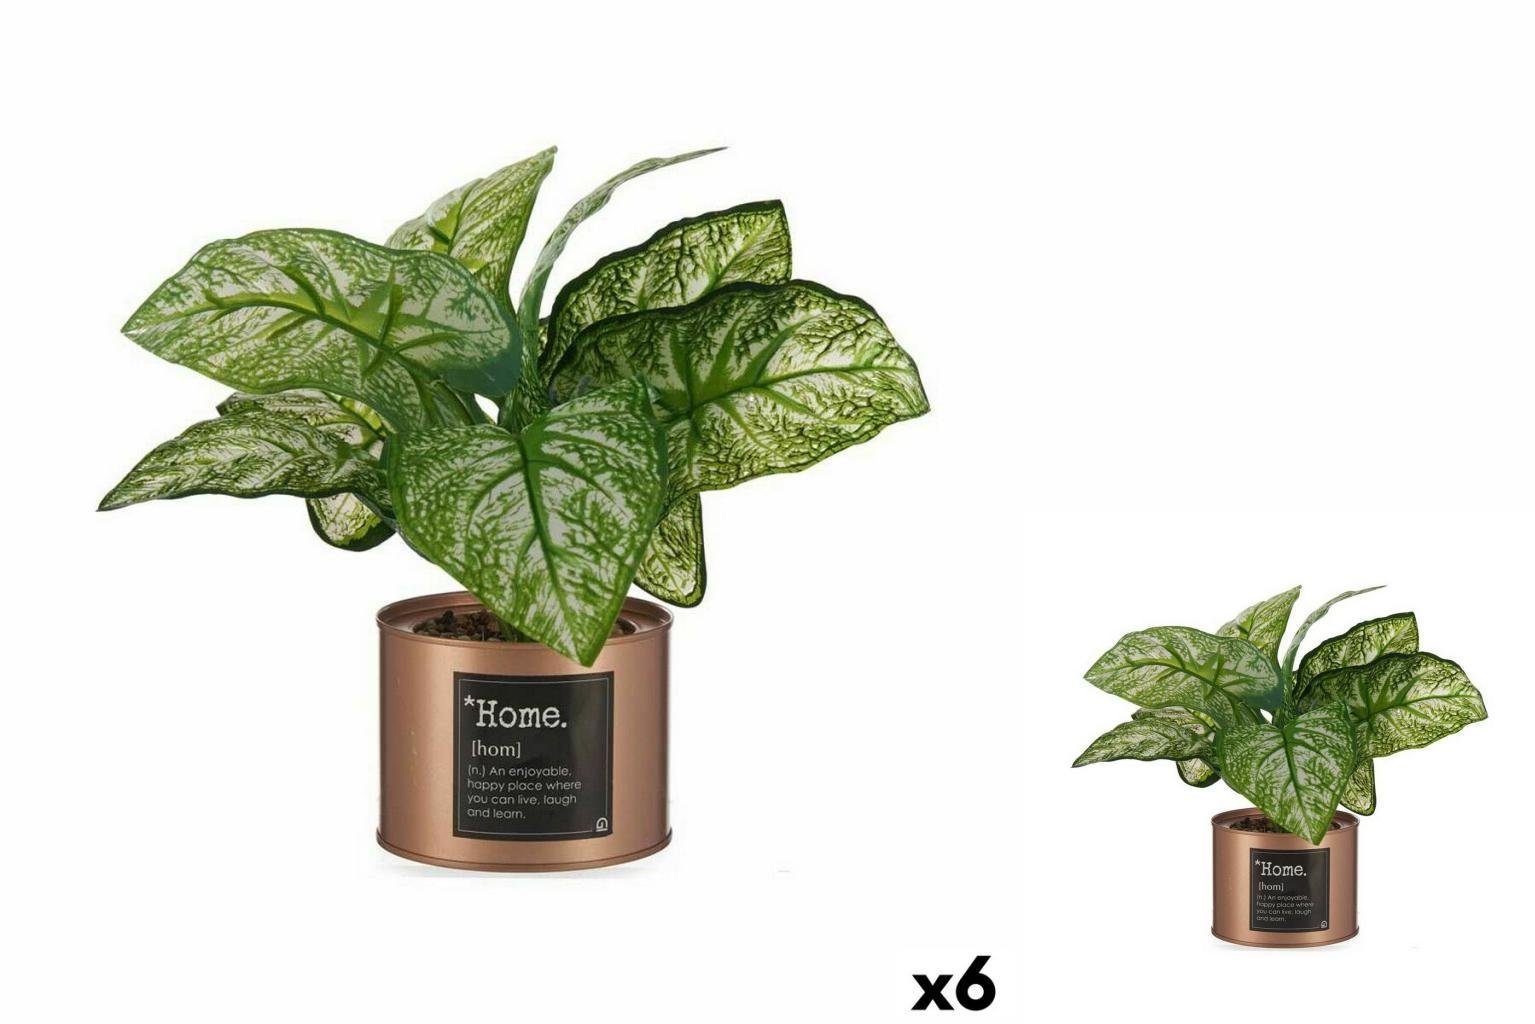 Künstliche Zimmerpflanze Dekorationspflanze Home Kupfer Dose 26 x 26 x 26 cm 6 Stück, Ibergarden, Höhe 26 cm